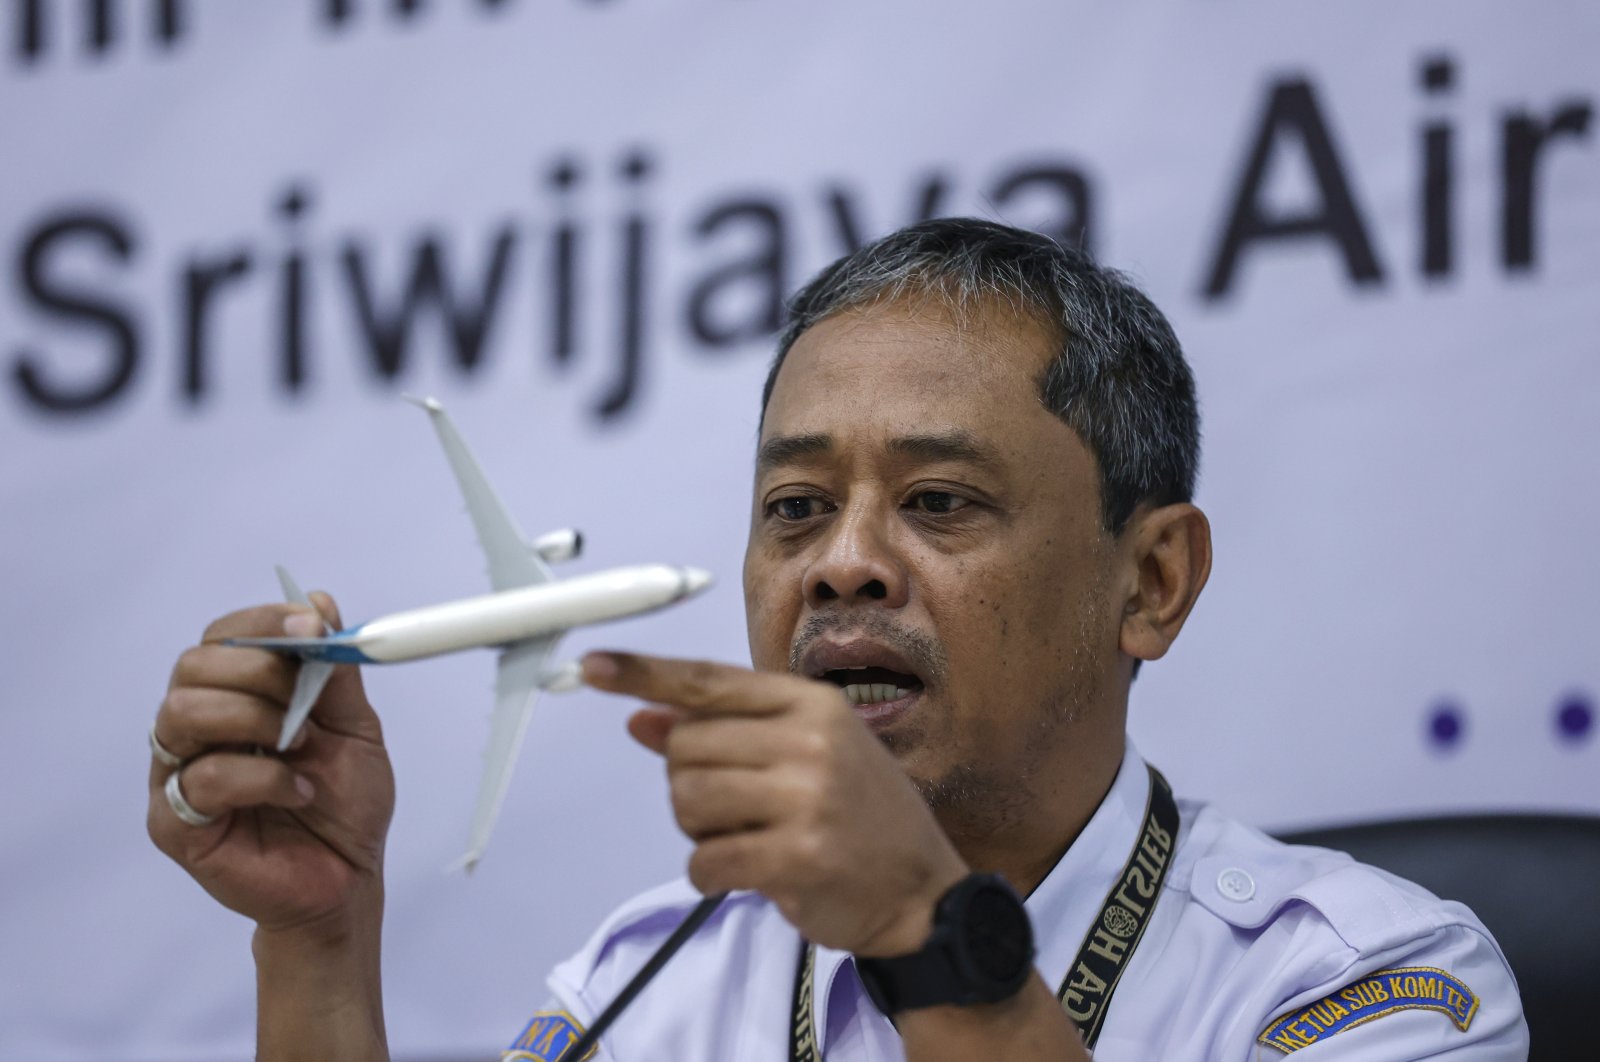 Kegagalan untuk memperbaiki throttle menyebabkan kecelakaan pesawat Indonesia yang menewaskan 62 orang: Laporkan